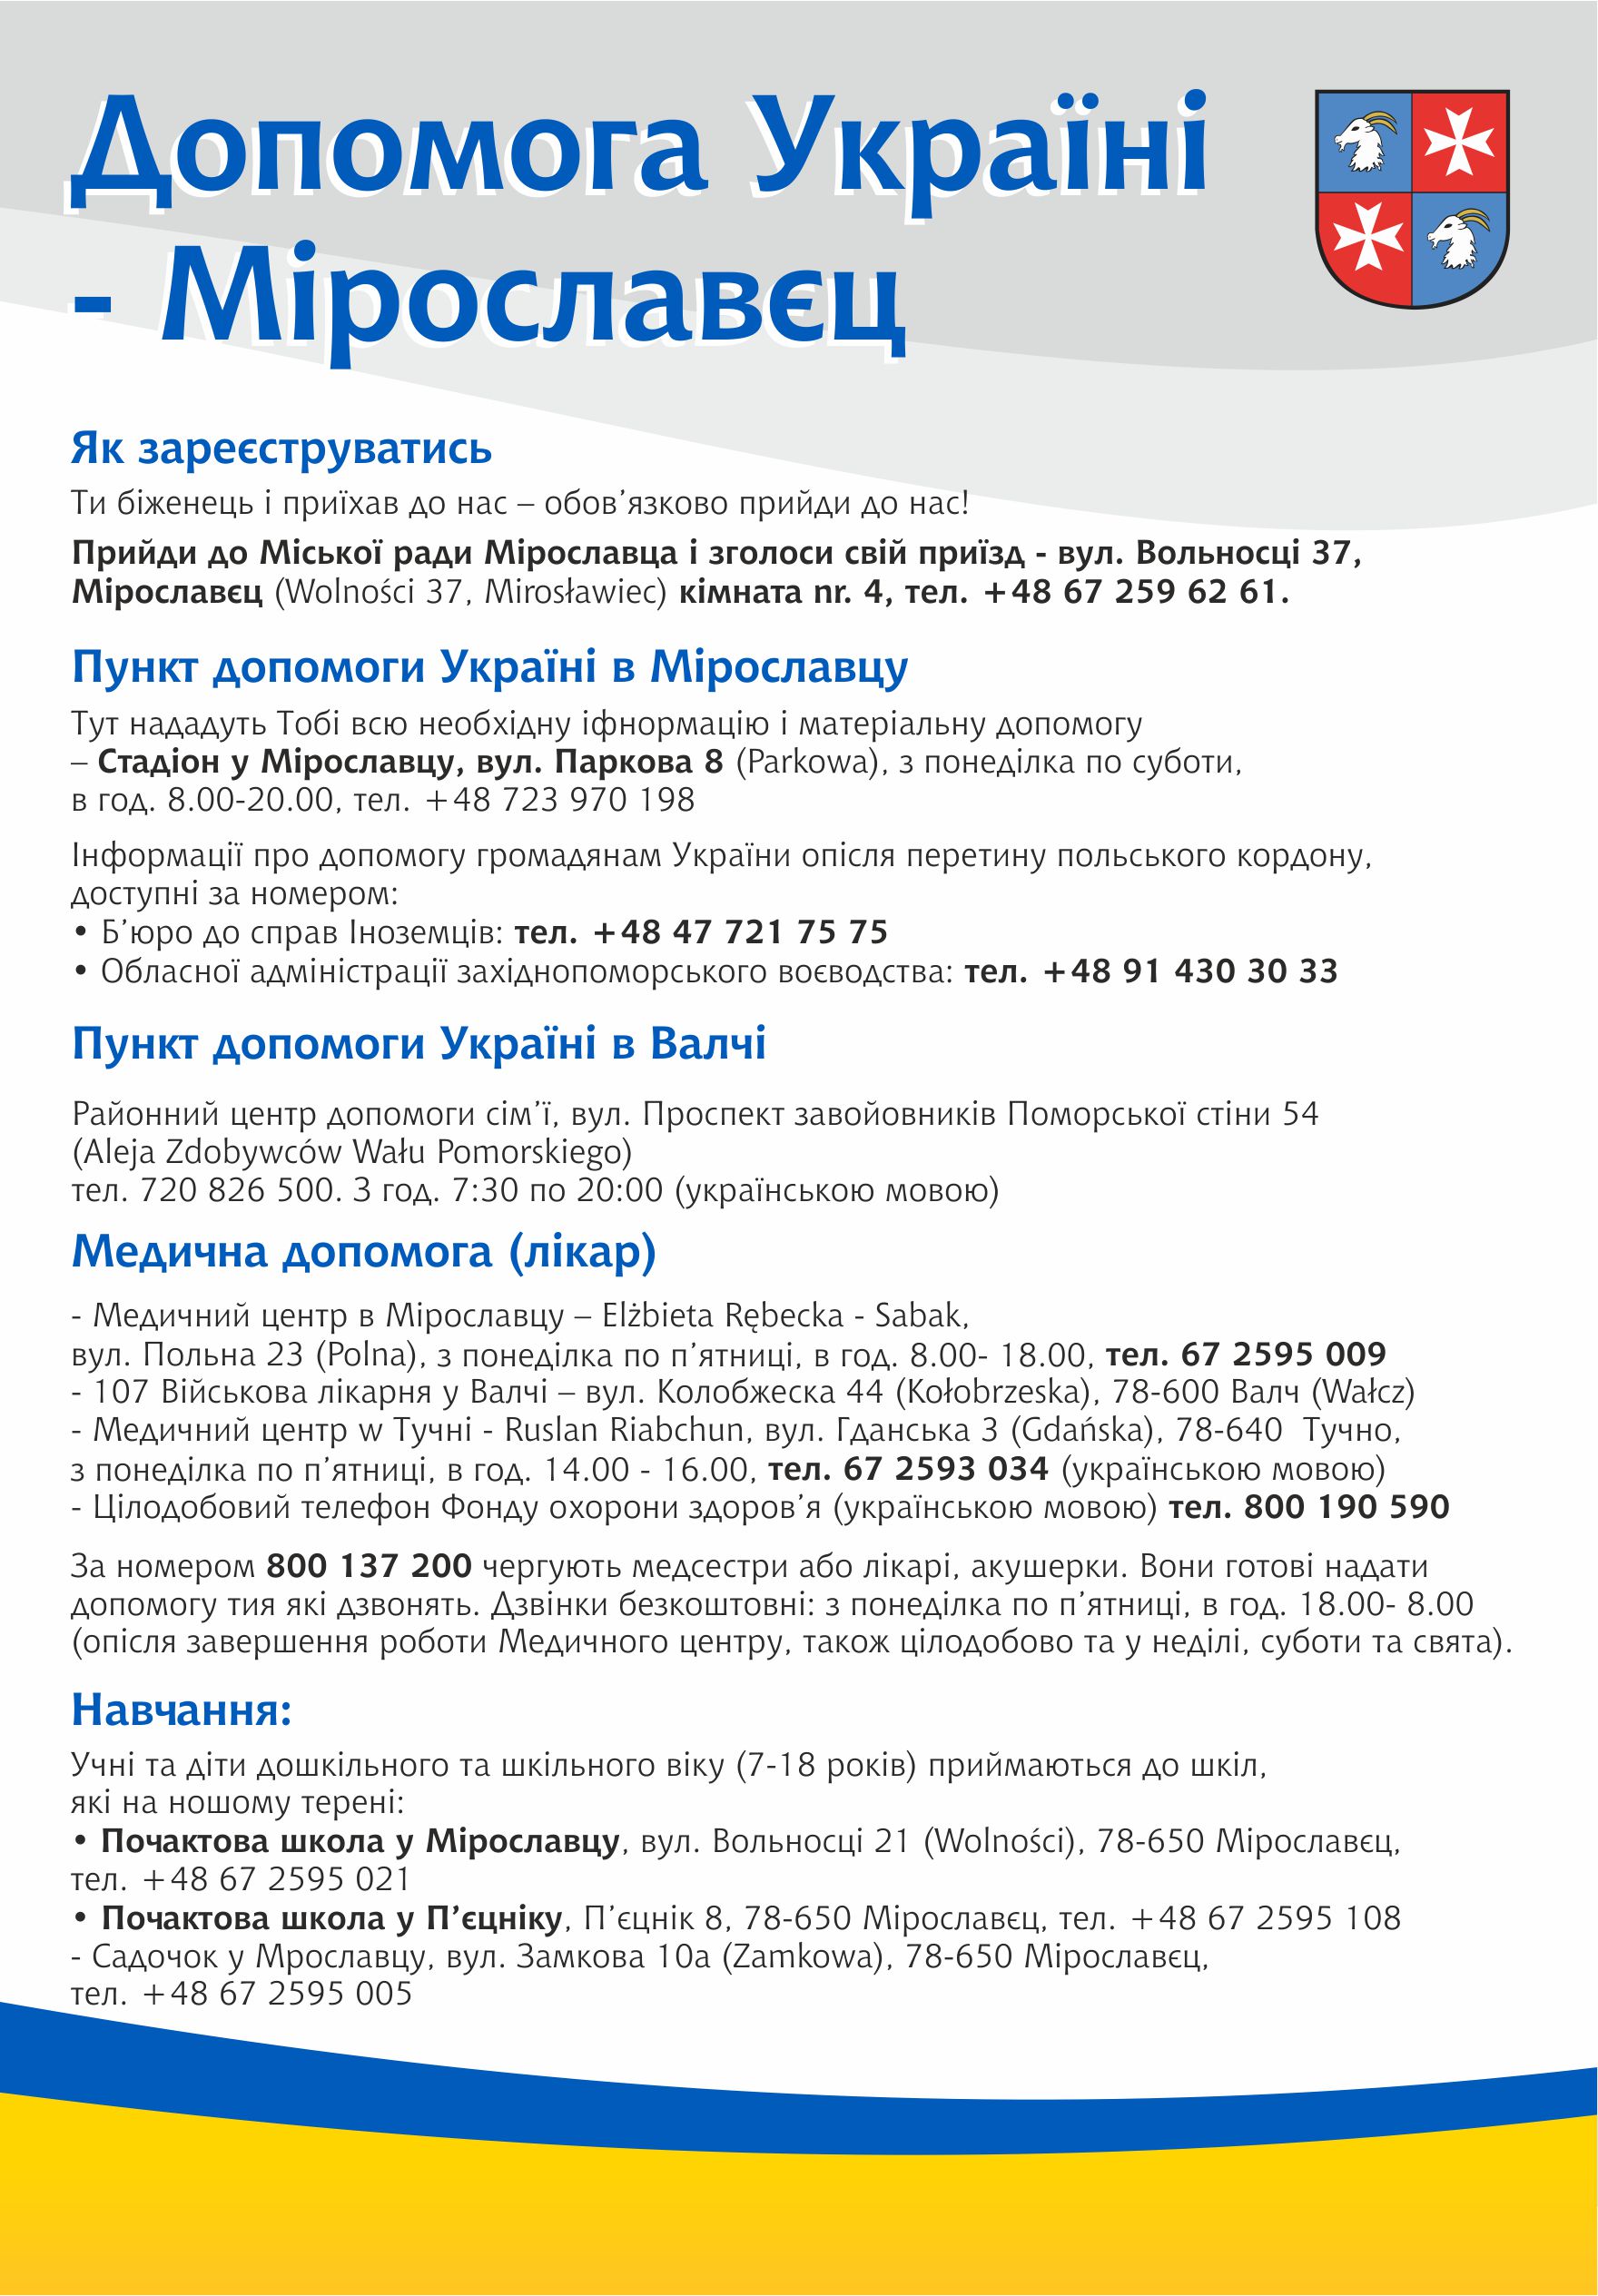 Mirosławiec pomaga Ukrainie - najważniejsze informacje w pigułce, w języku ukraińskim